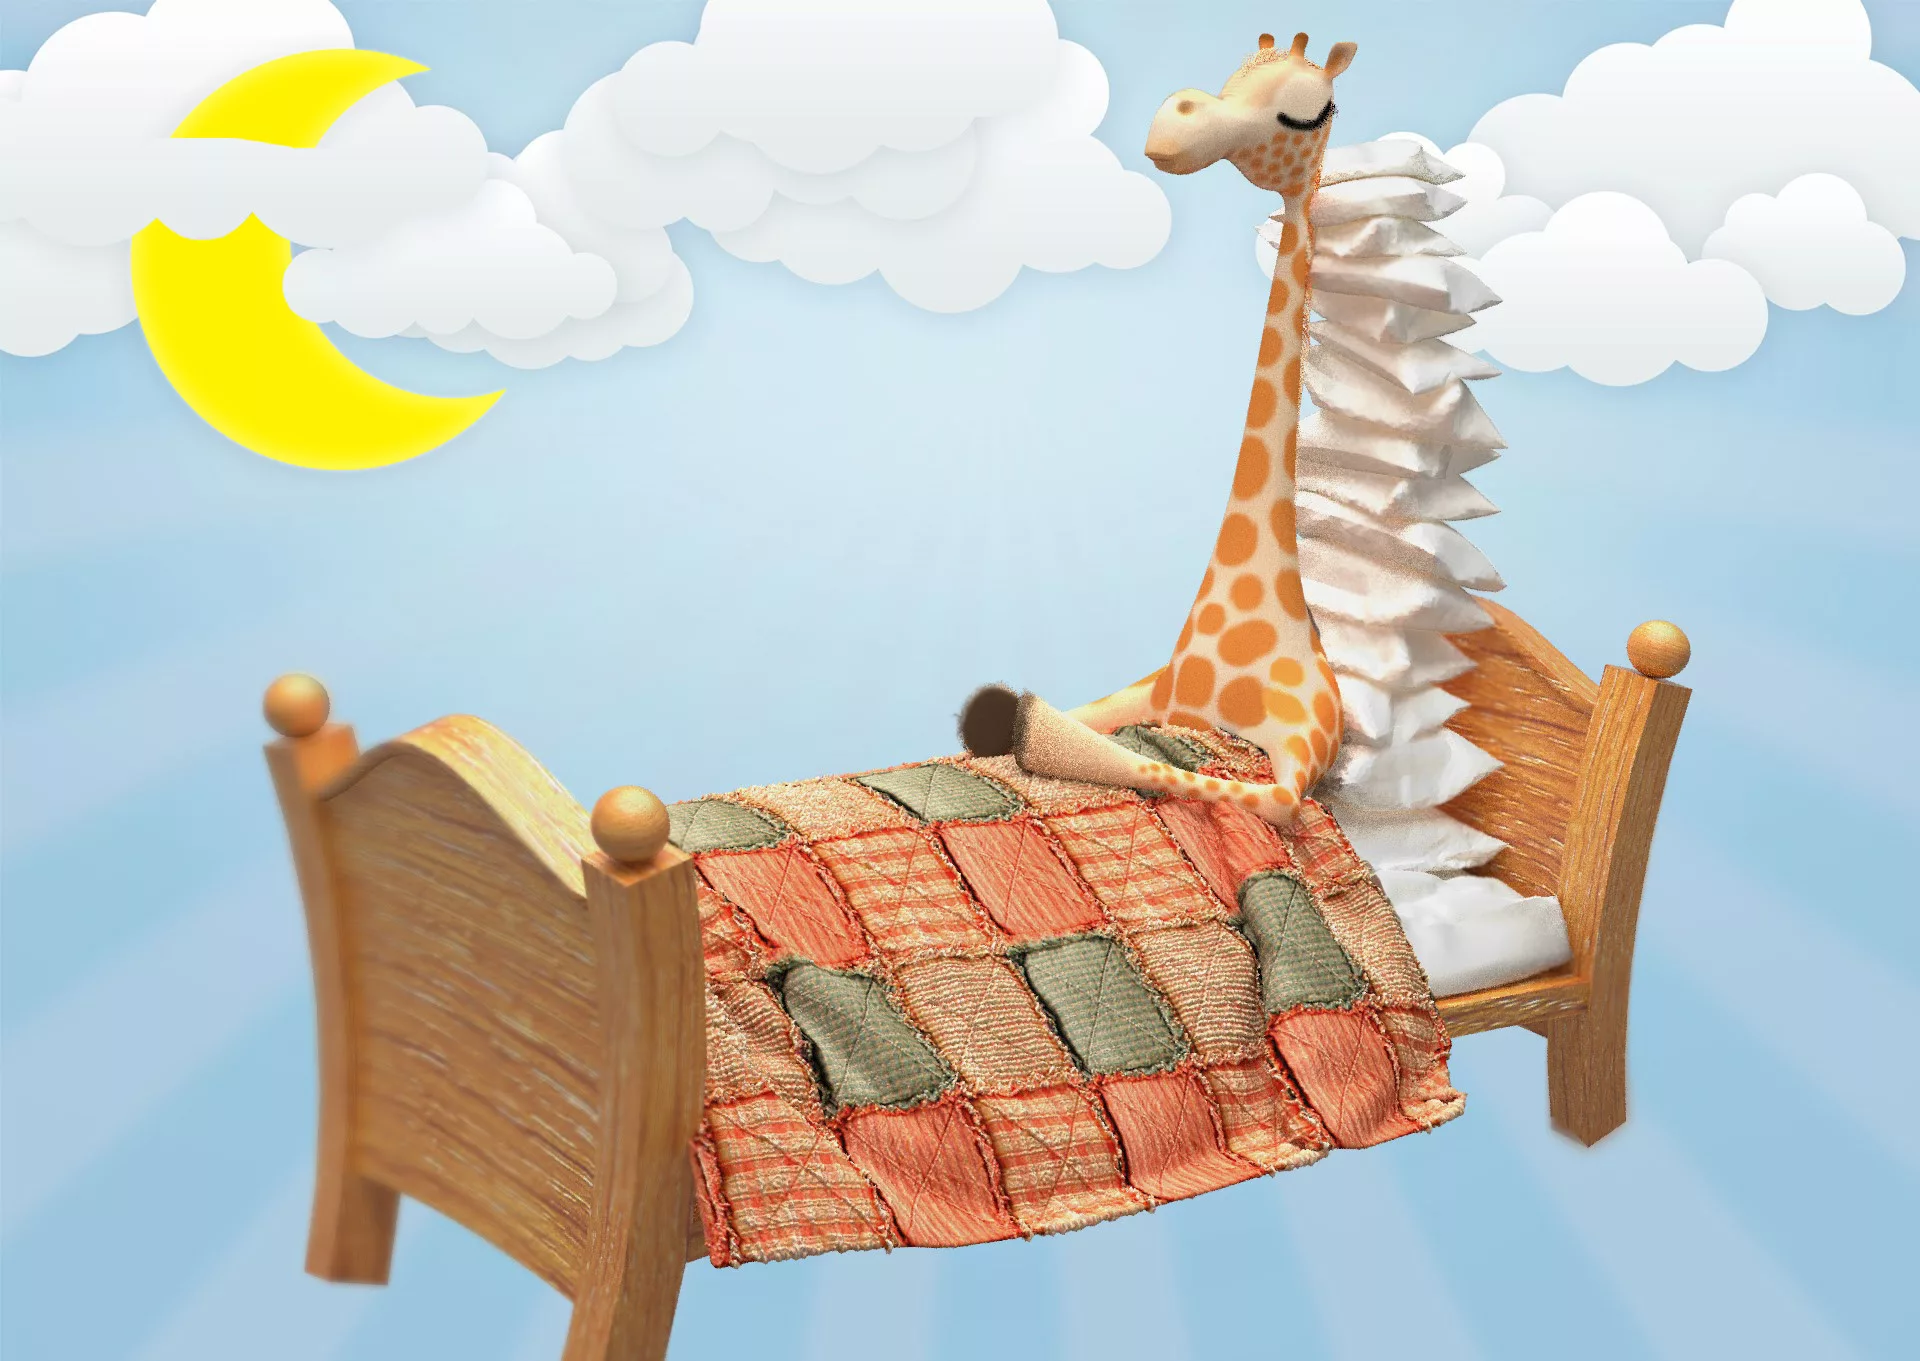 Спи спокойной ночи малыши. Спокойной ночи малыши деревяшки. Спокойной ночи Жирафик. Спящий Жирафик. Кровать Жираф.